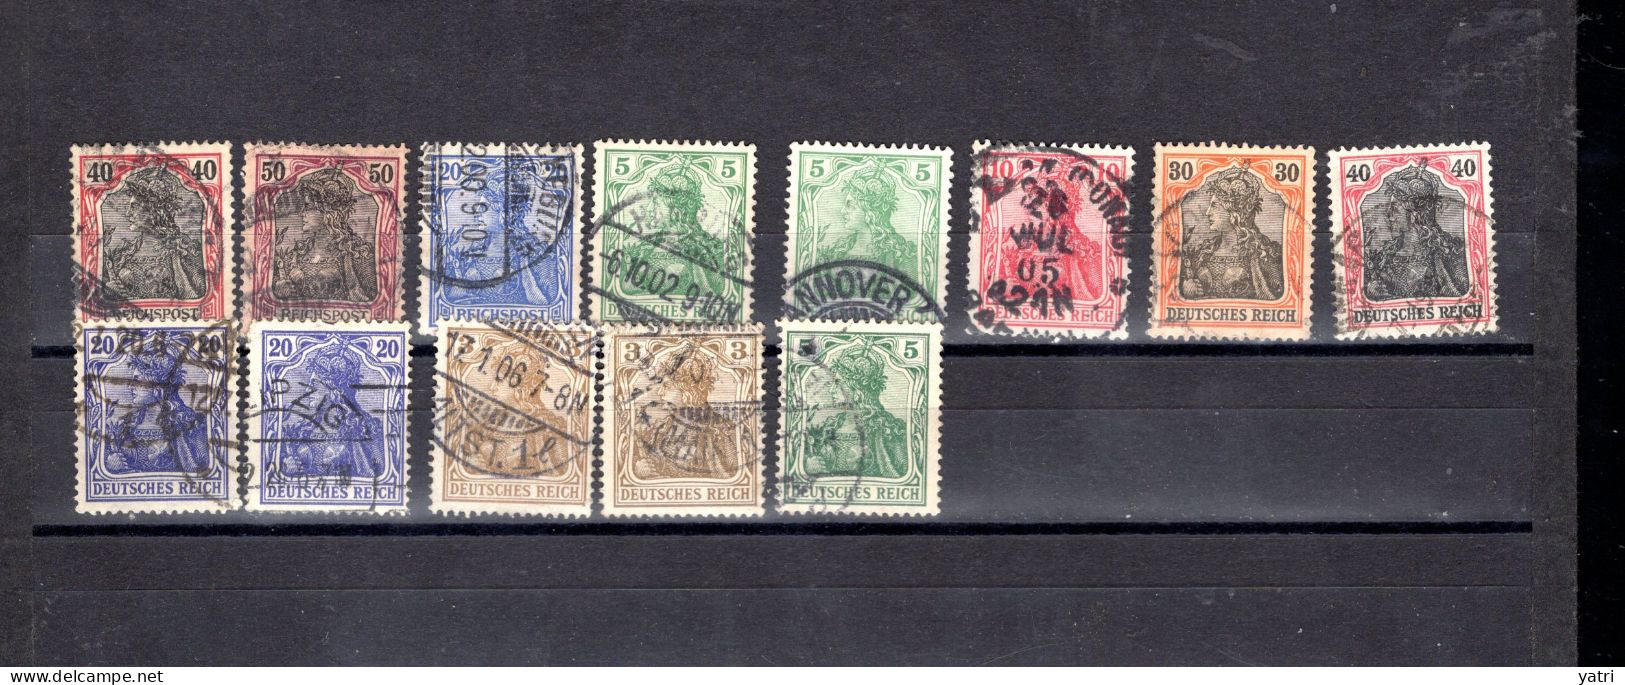 Deutsches Reich (1905) - Mi. 55/85 - 220 francobolli  (RIF:phi|19-51|)